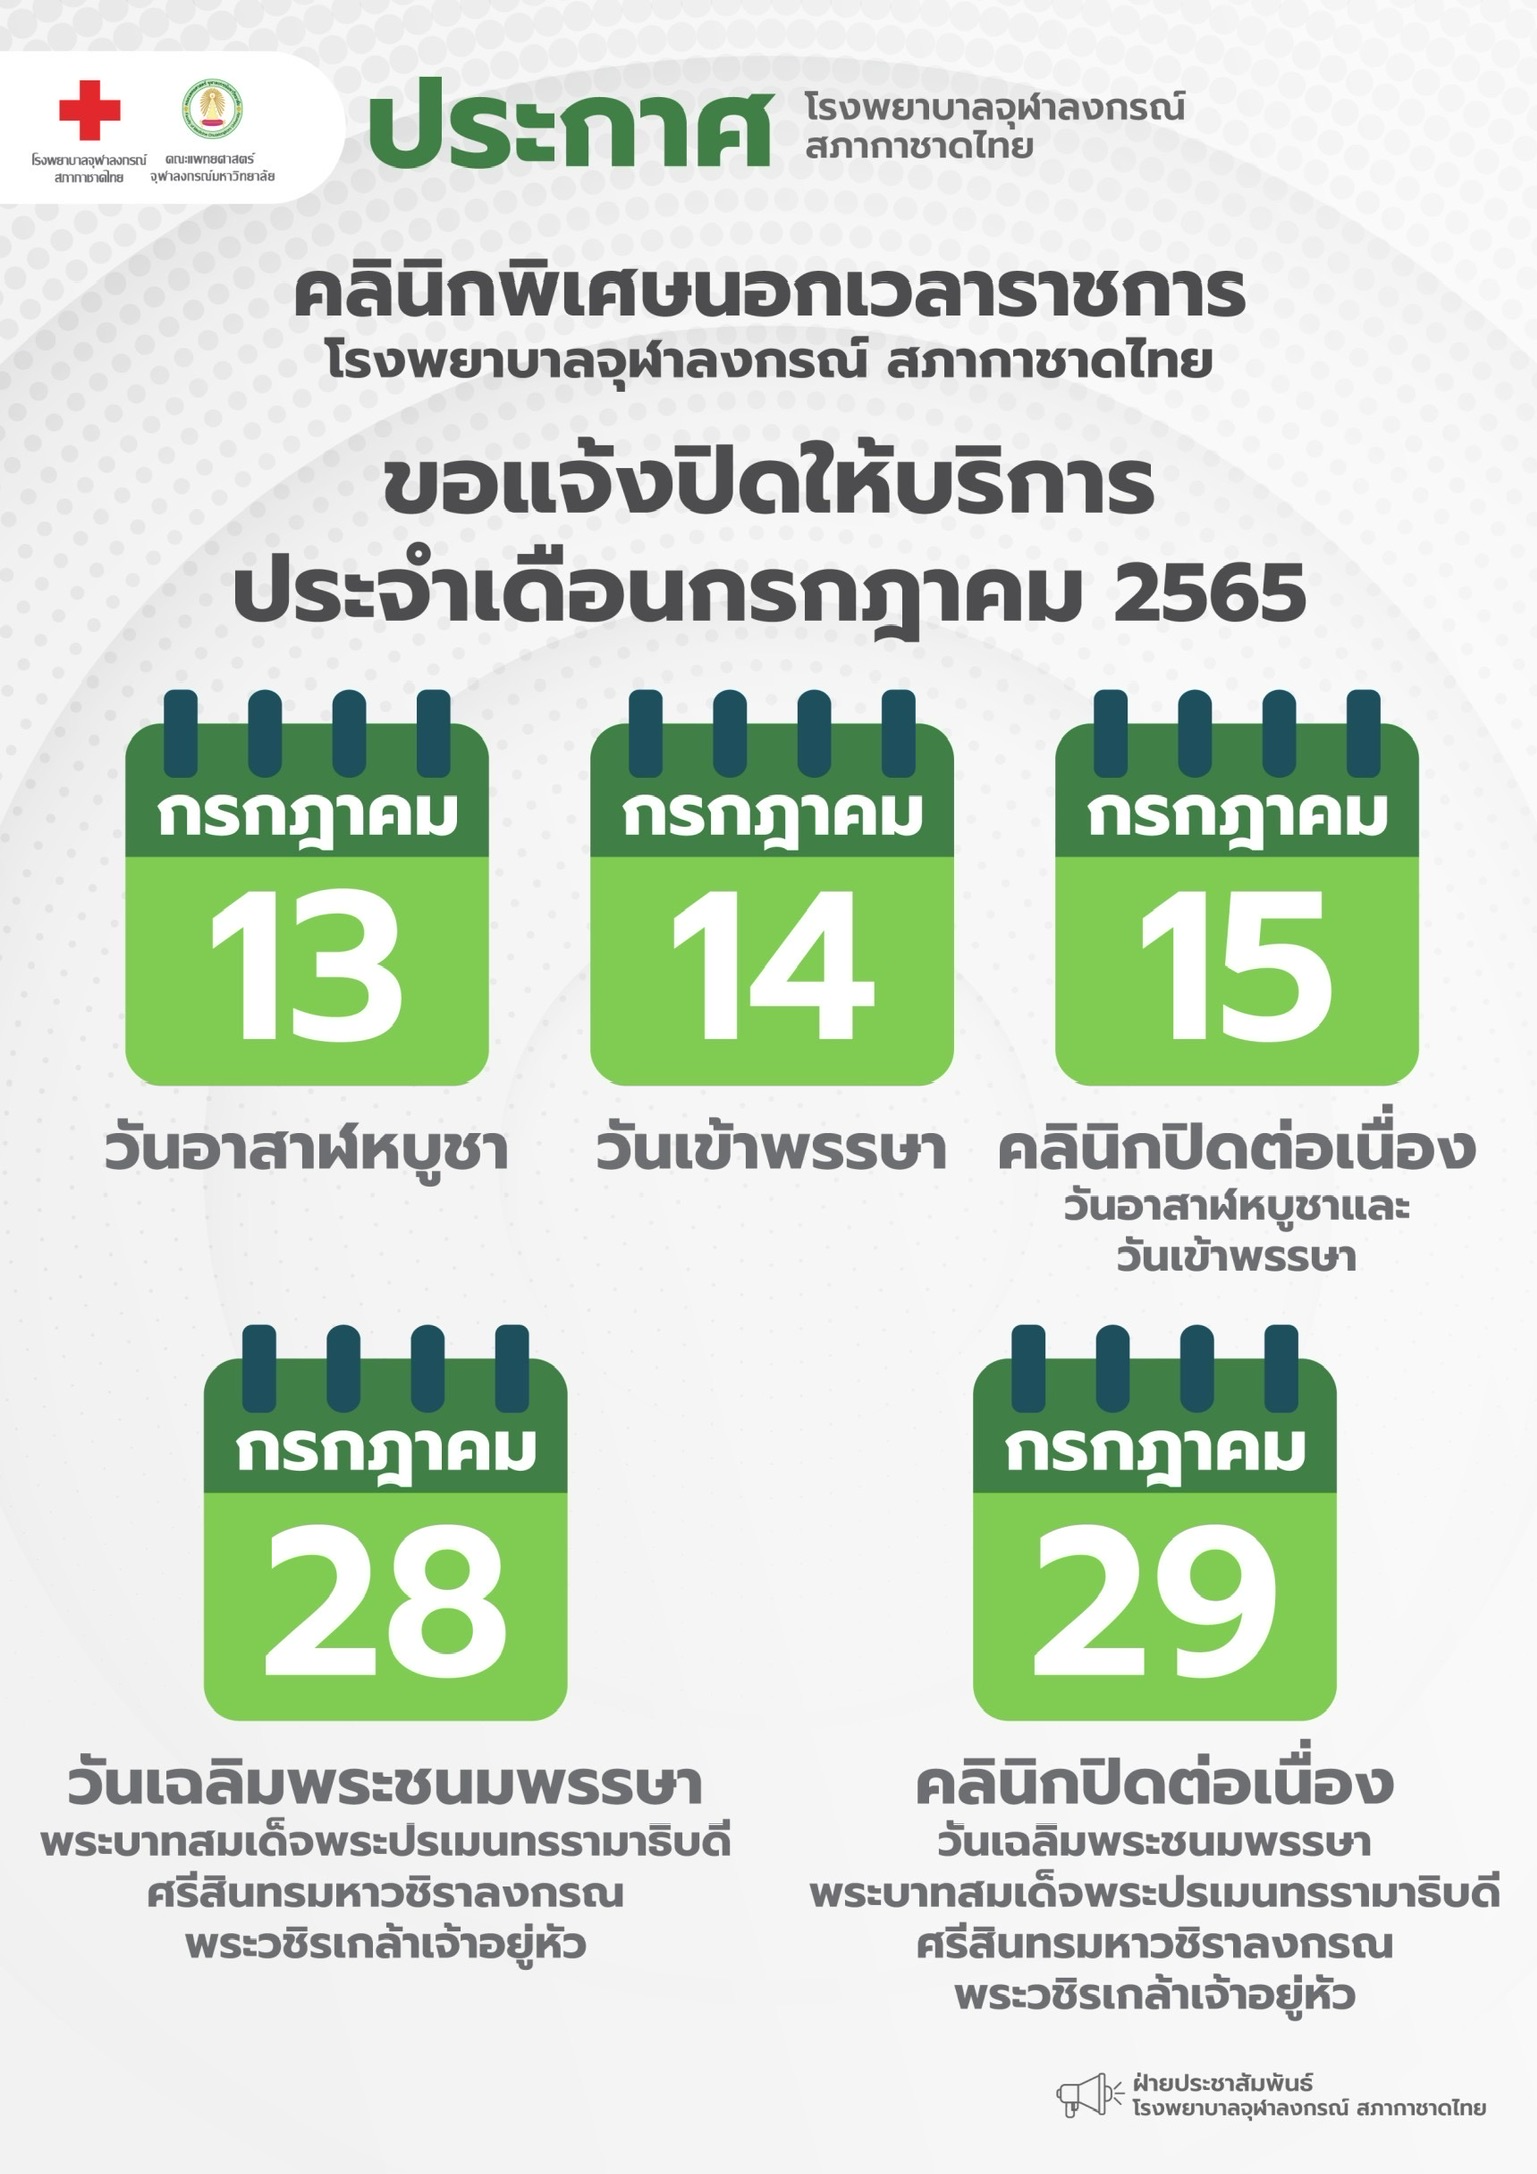 คลินิกพิเศษนอกเวลาราชการ โรงพยาบาลจุฬาลงกรณ์ สภากาชาดไทย ขอแจ้งปิดให้บริการ ประจำเดือนกรกฎาคม 2565